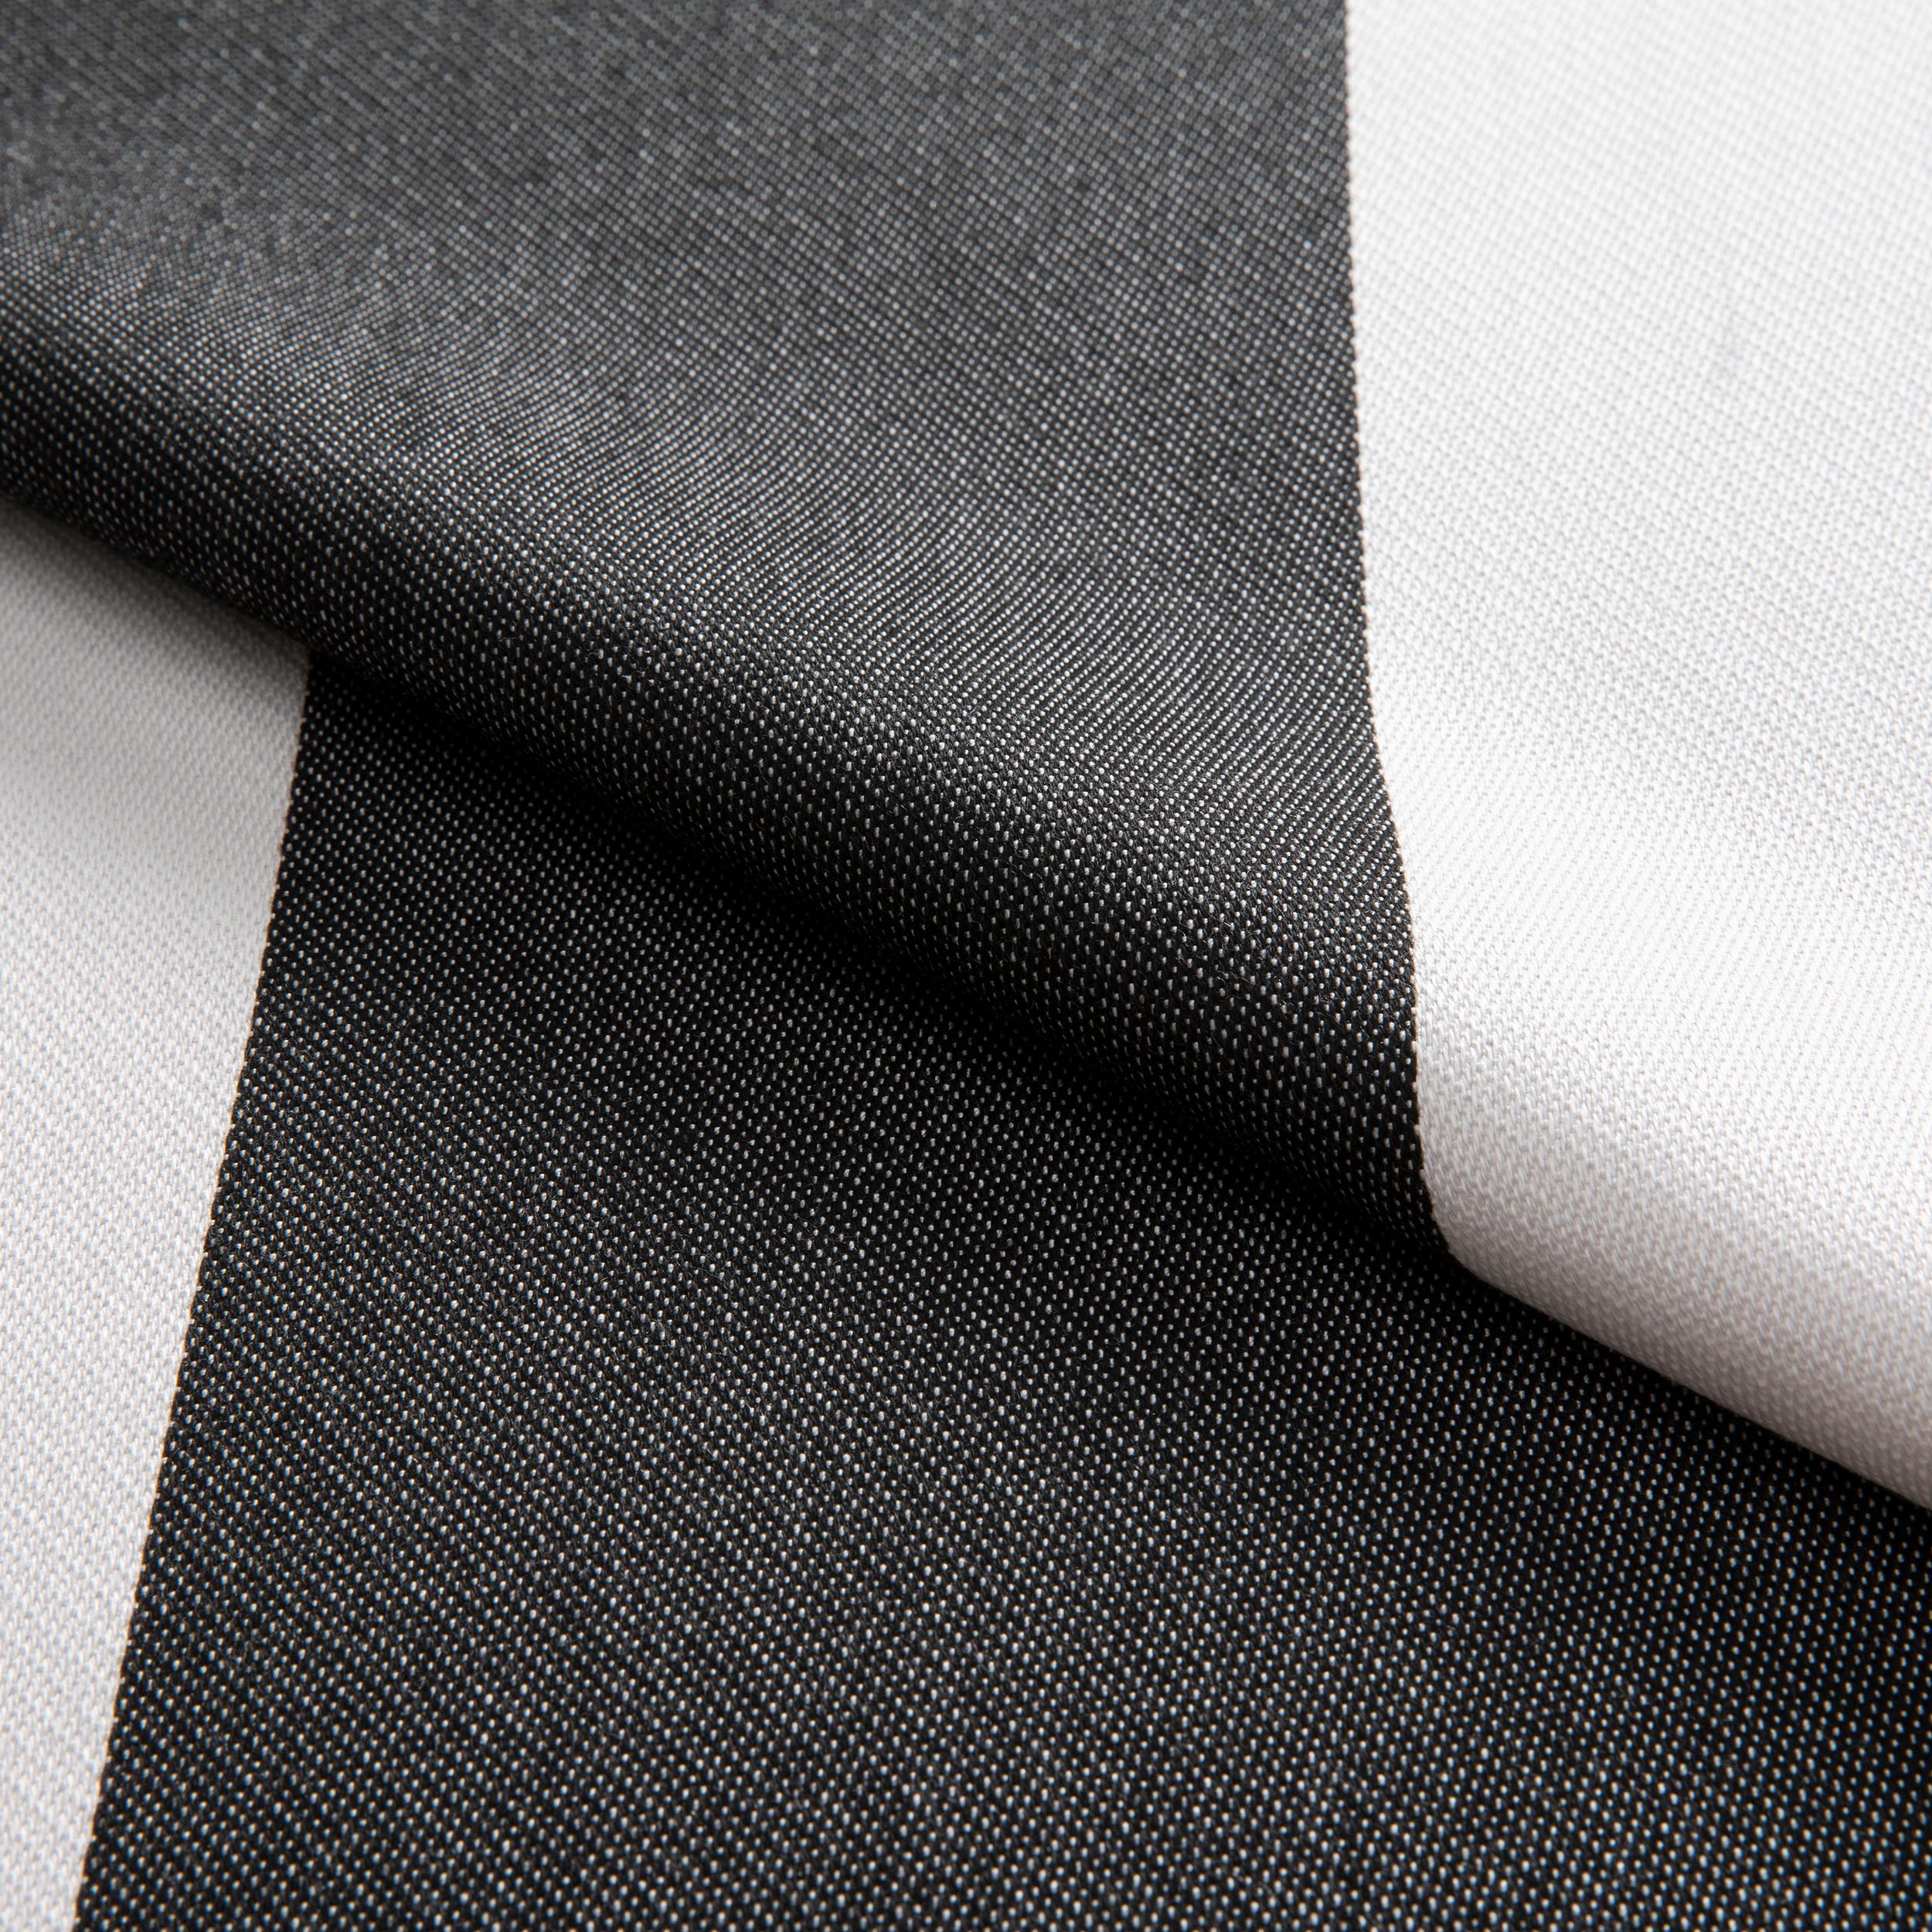 Plain Stripe Noir (2).jpg